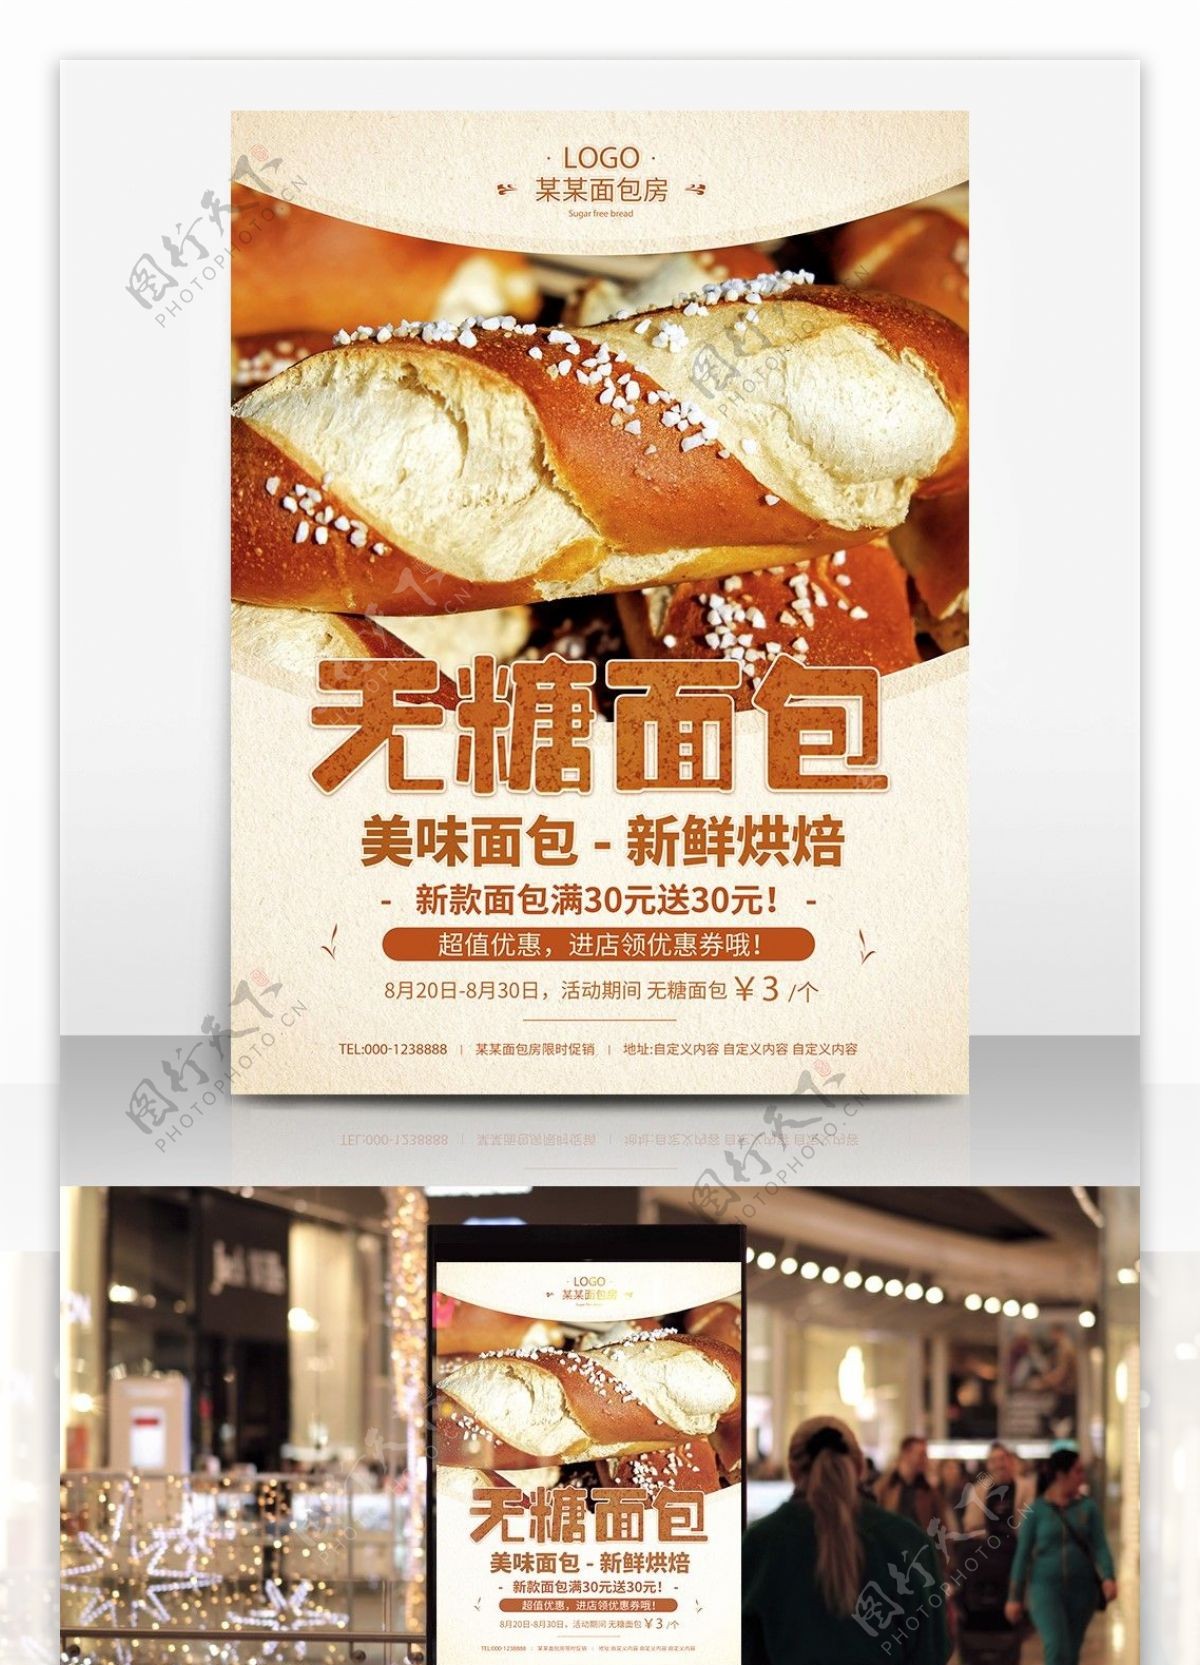 美味面包店打折促销宣传海报